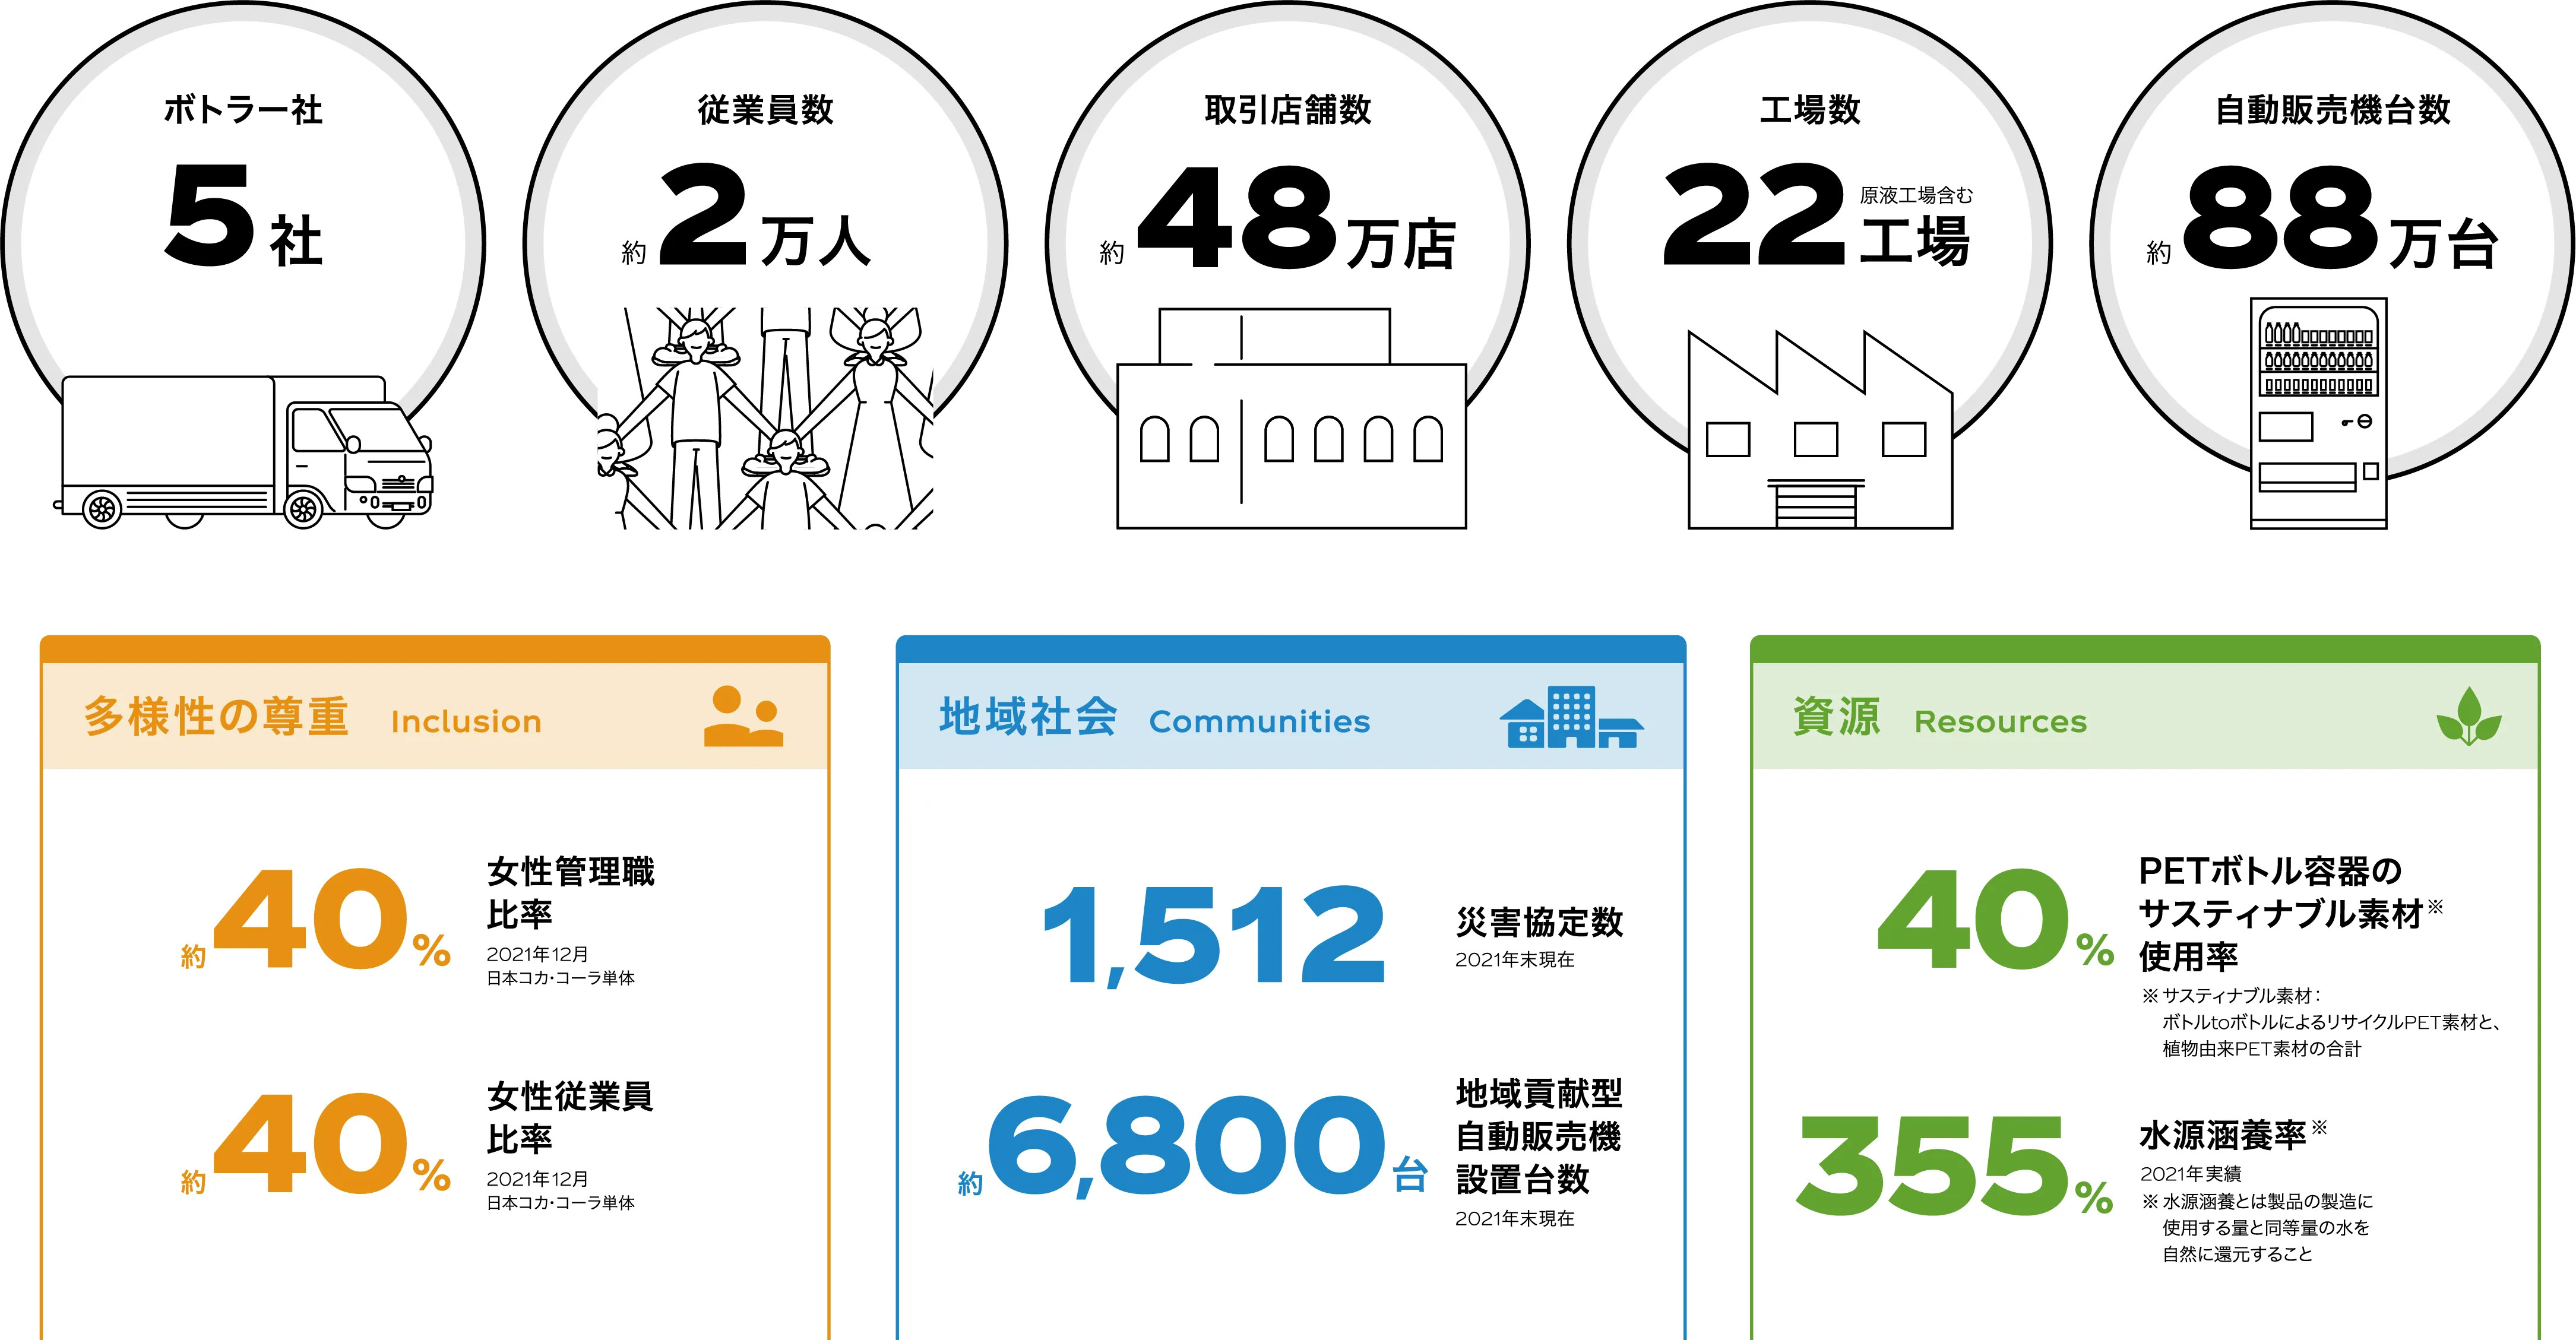 数字で見る日本のコカ·コーラシステム